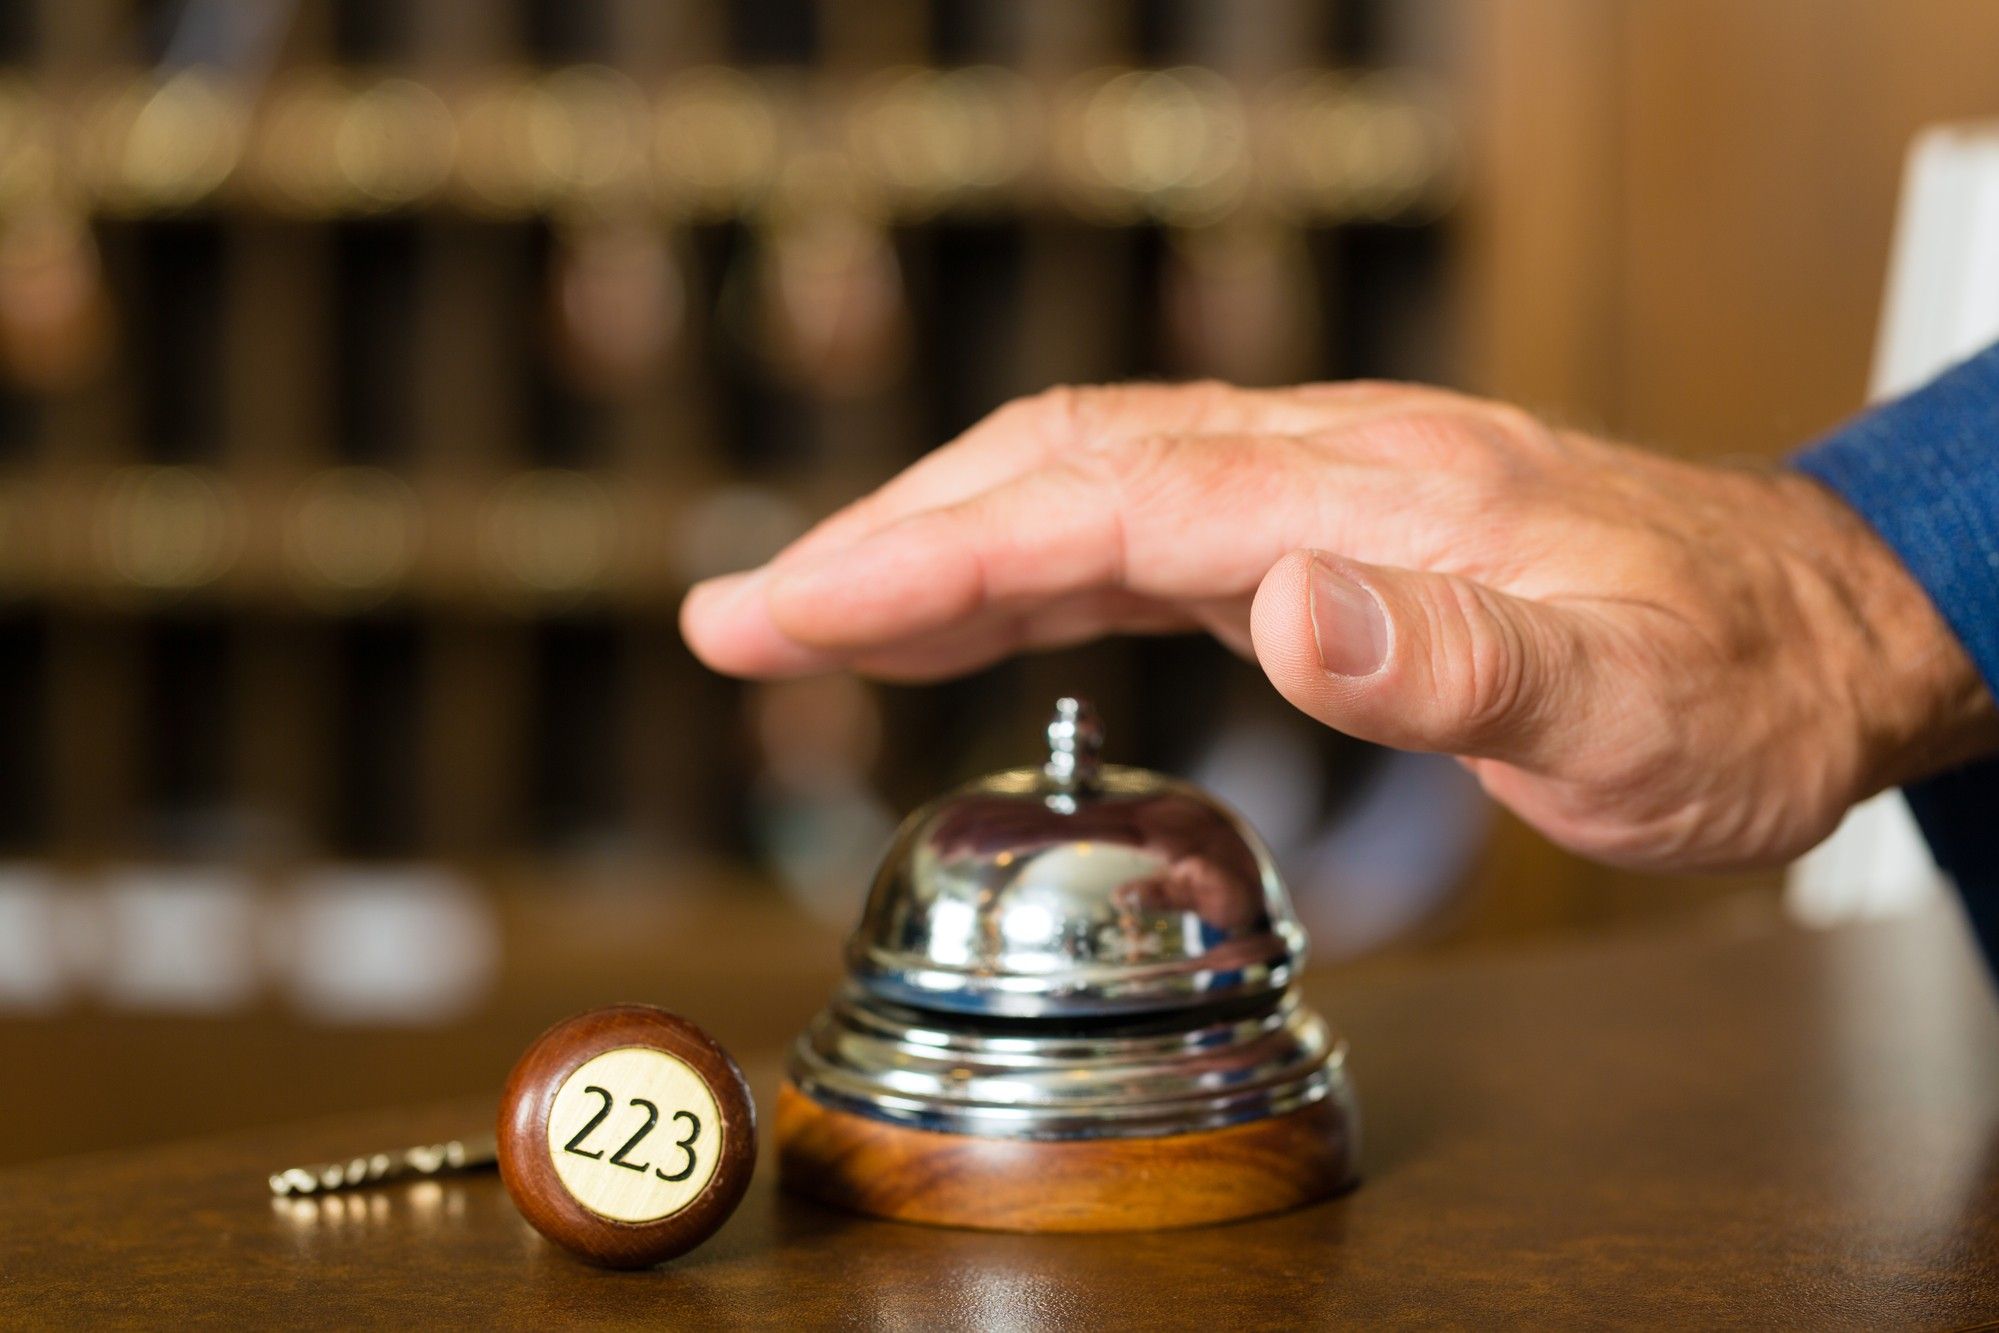 man's hand ringing bell at hotel reception desk